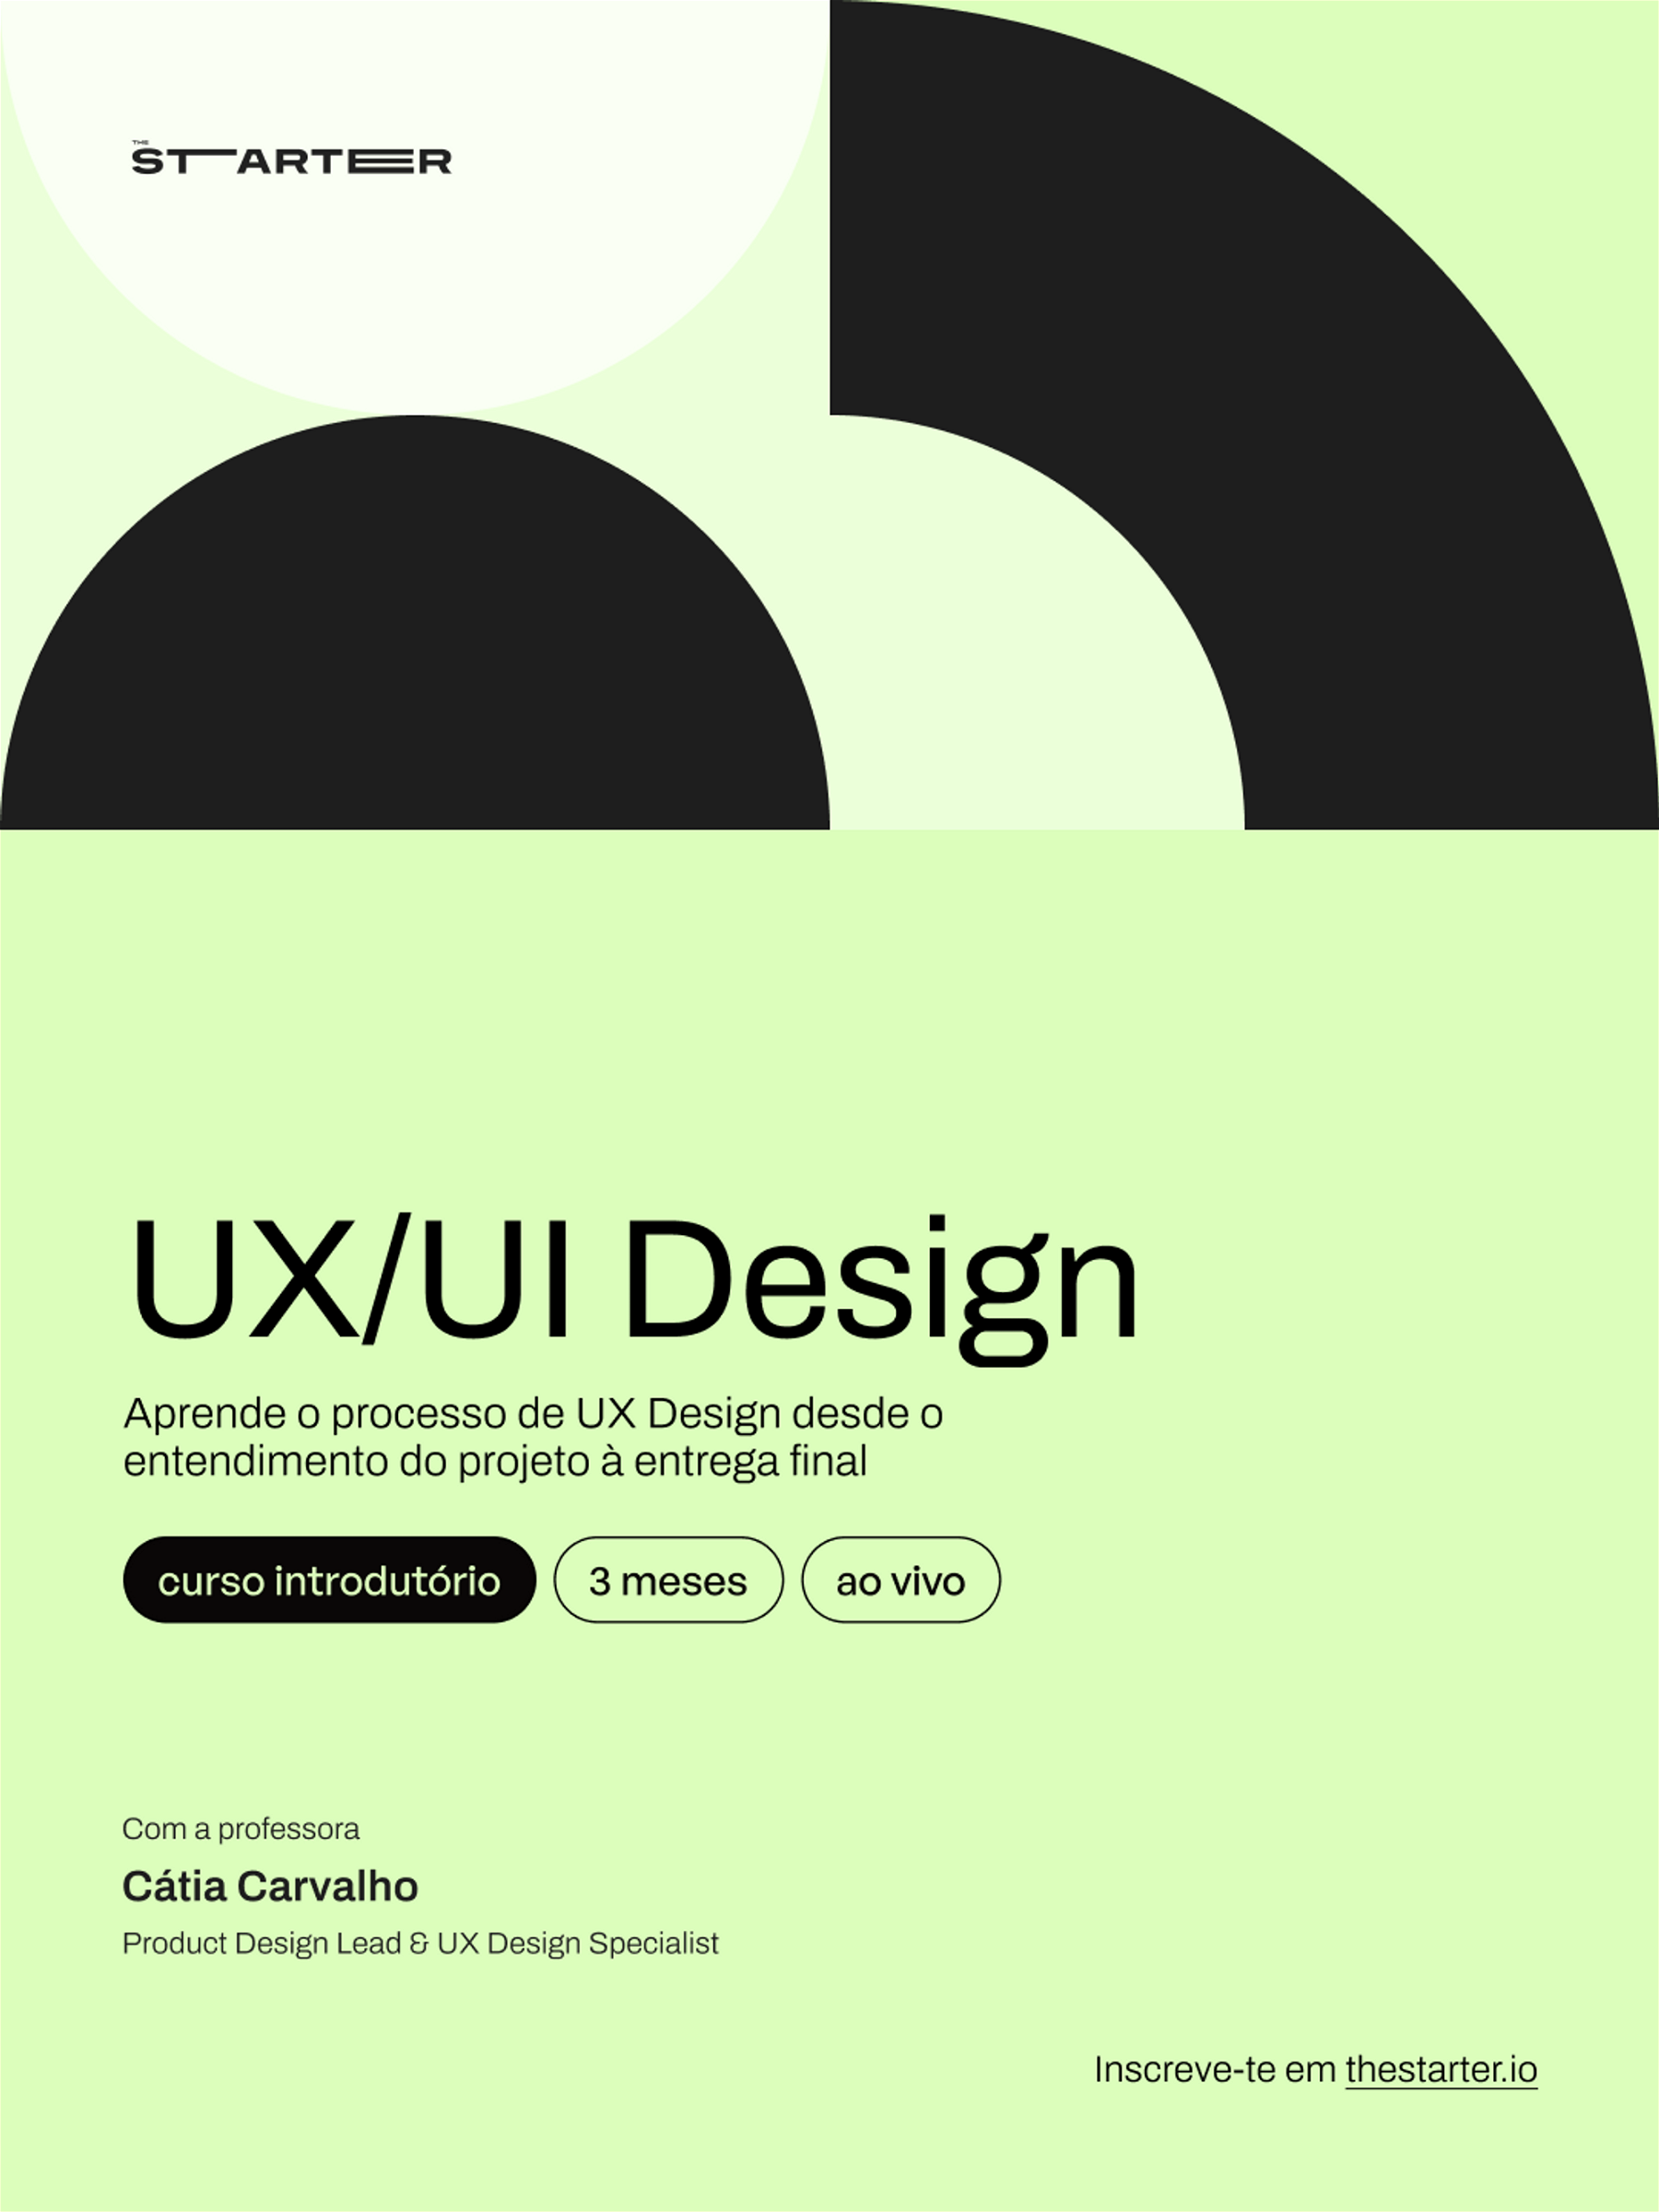 Curso UX/UI Design. Clica aqui para saberes mais informações.